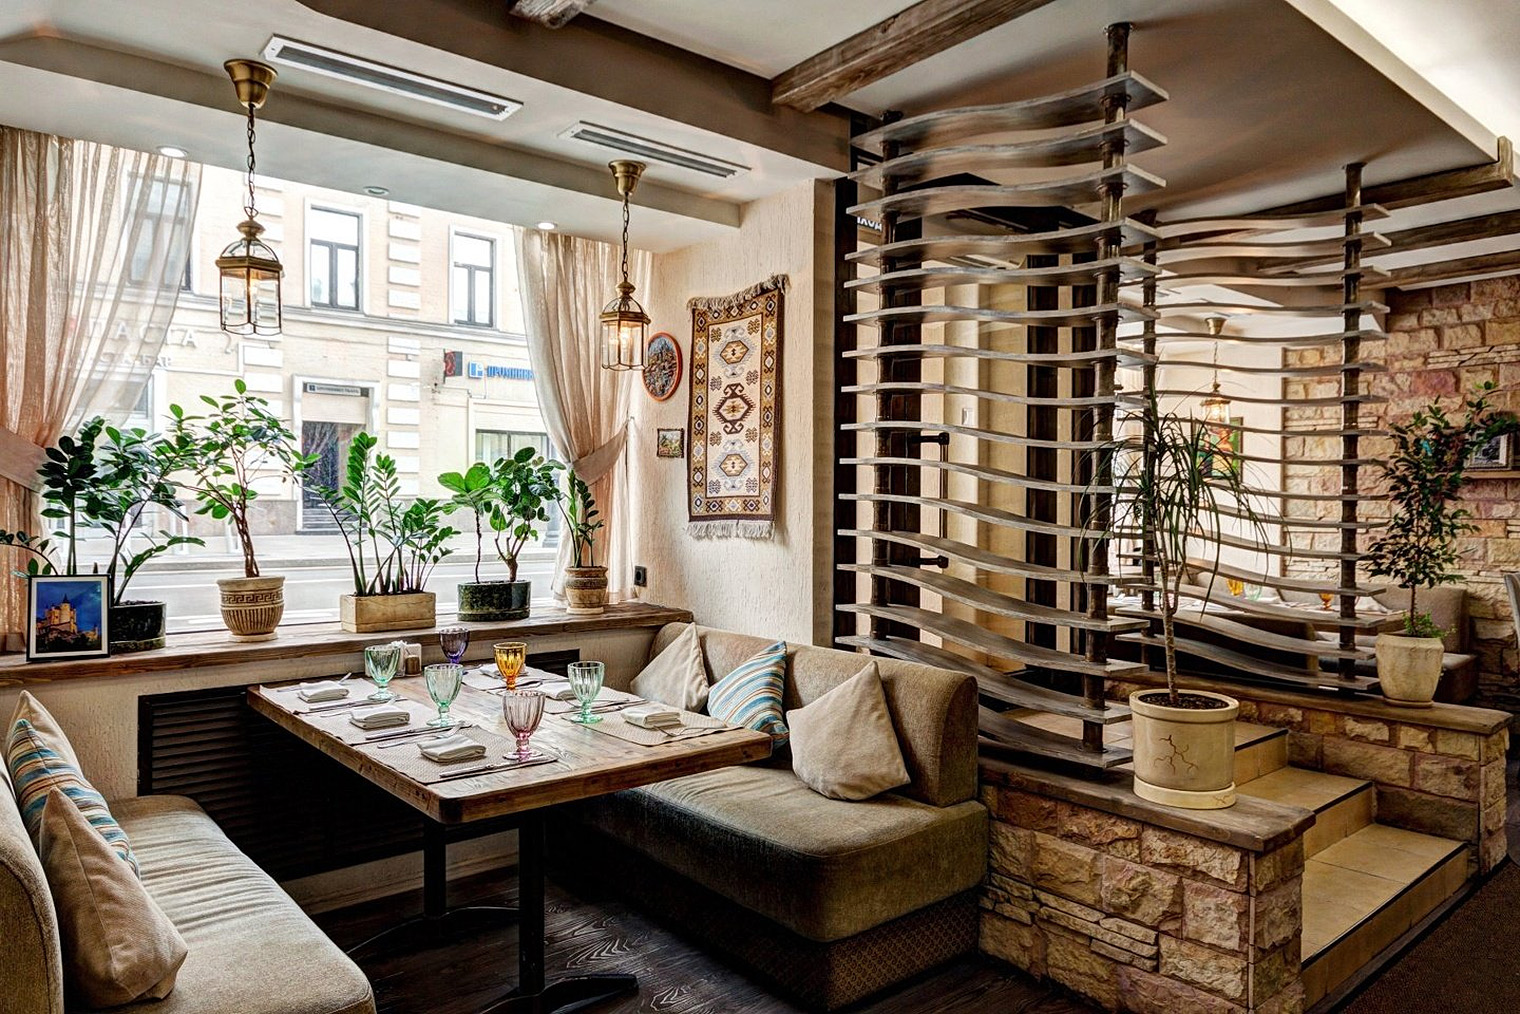 Зал ресторана на Маросейке. Здесь домашняя атмосфера, ощущаю себя как у бабушки в гостях. Источник: cafenatahtari.ru